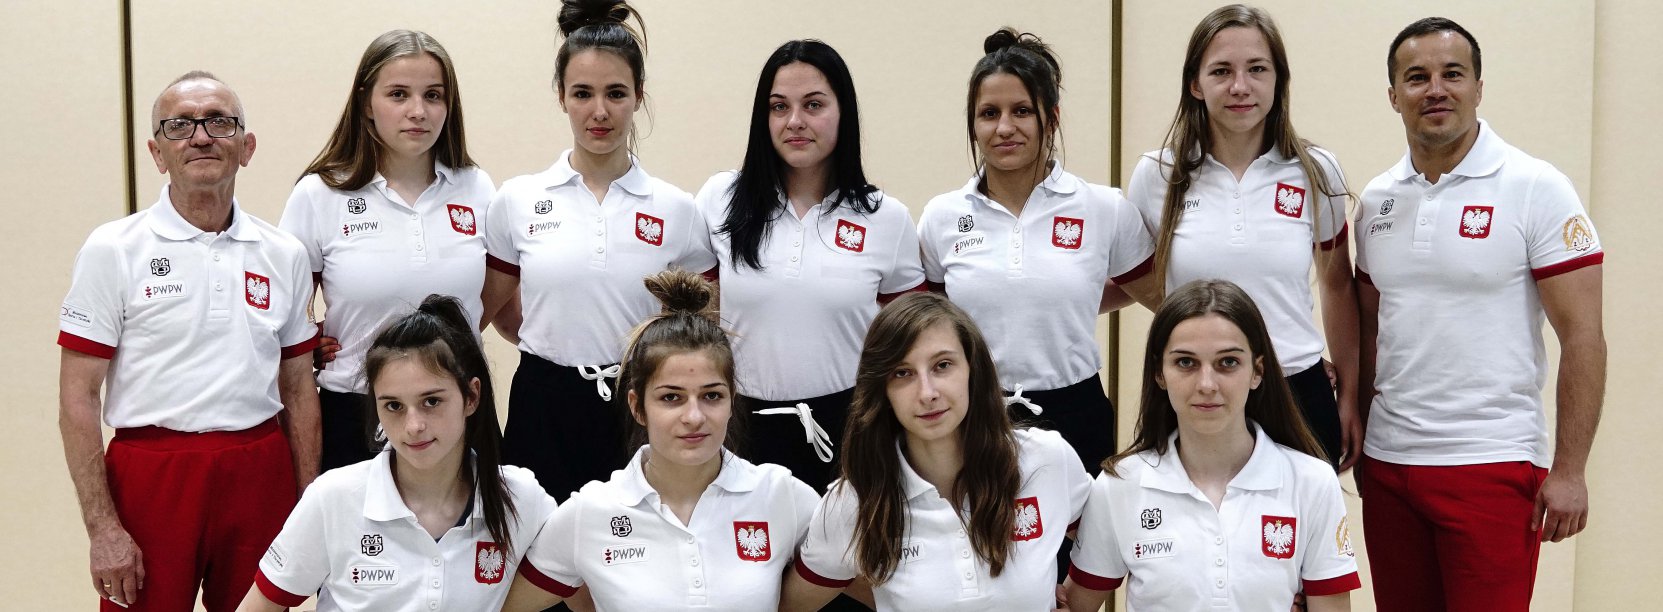 Grupowe zdjecie zawodników i trenerów w białych koszulkach z symbolem godła Polski